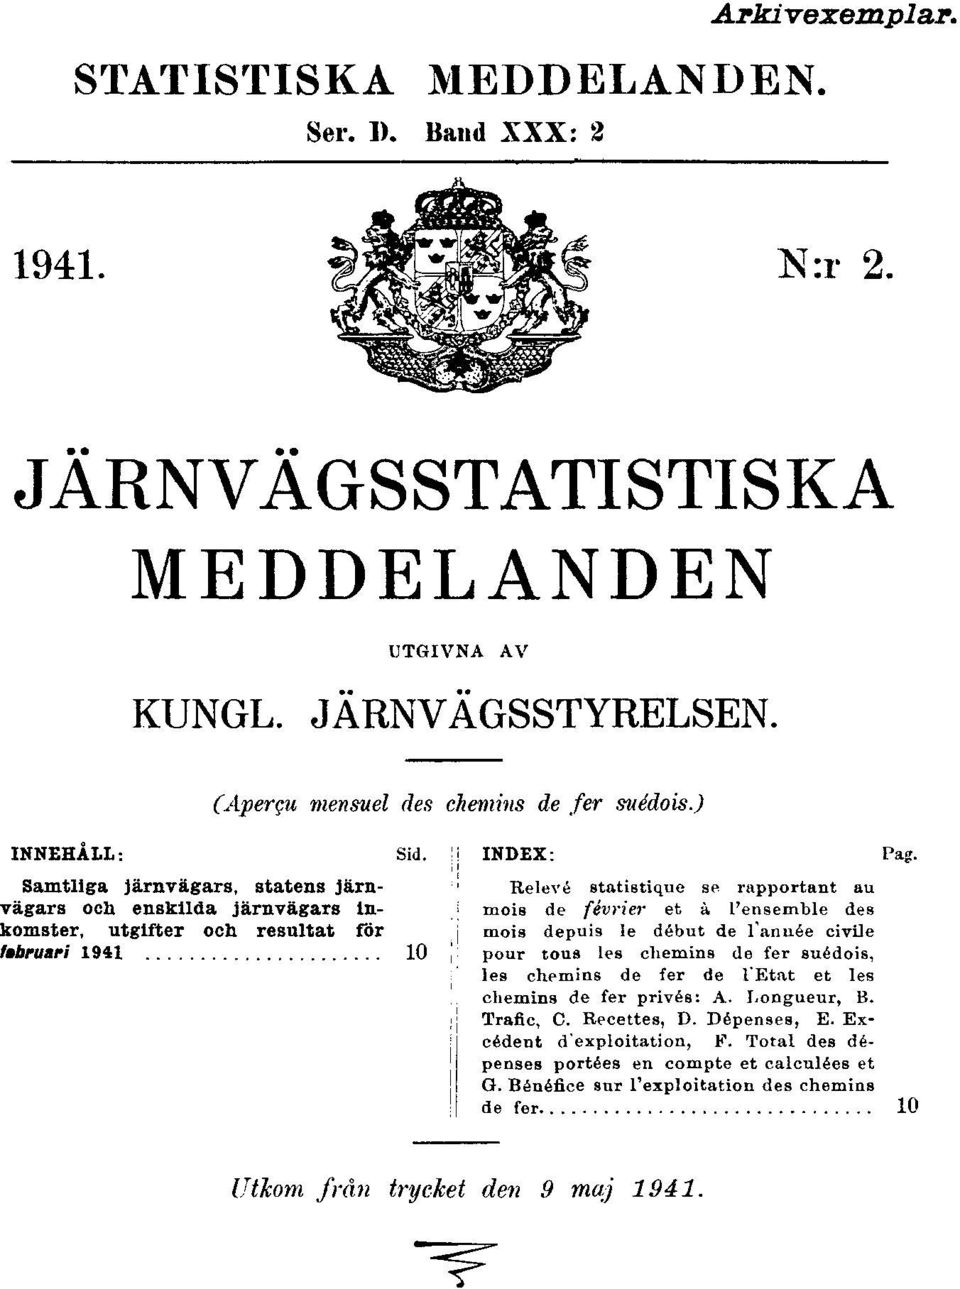 Relevé statistique se rapportant au mois de février et à l'ensemble des mois depuis le début de l'année civile pour tous les chemins de fer suédois, les chemins de fer de l'etat et les